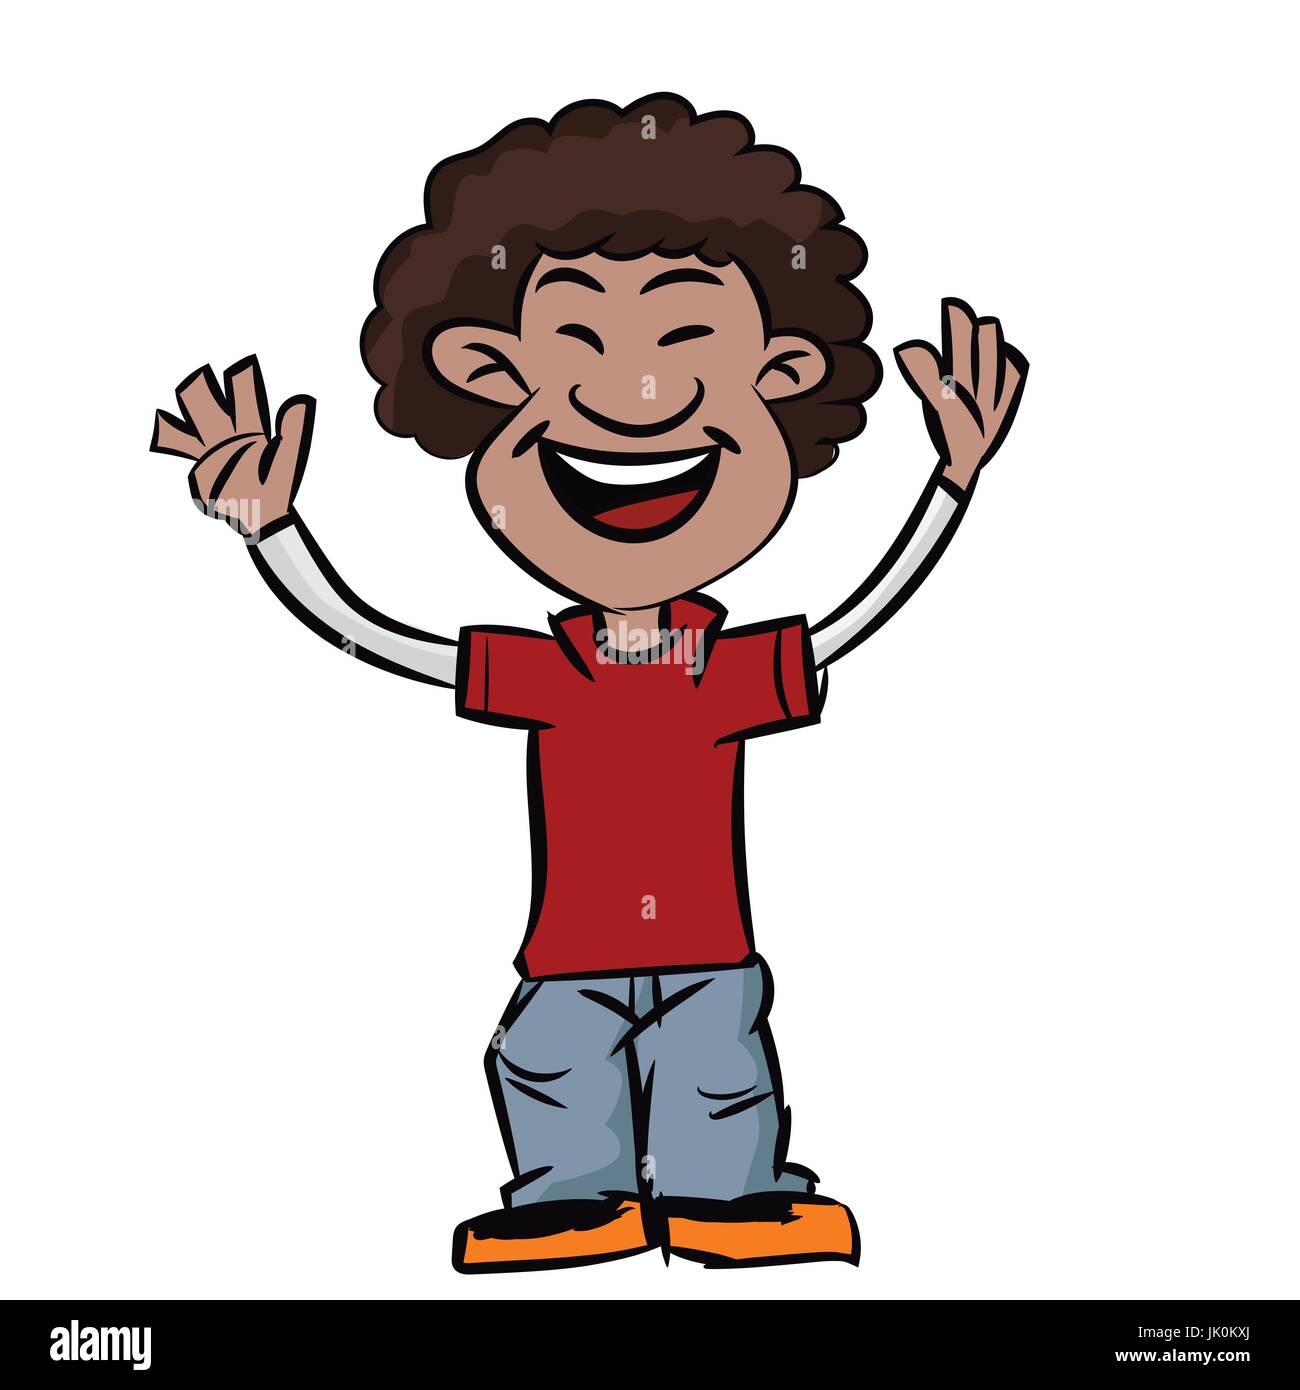 Bunten Cartoon Junge lächelte mit Afro-Frisur, afrikanische Teen machen Hände hoch - Vektor-Illustration. Stock Vektor